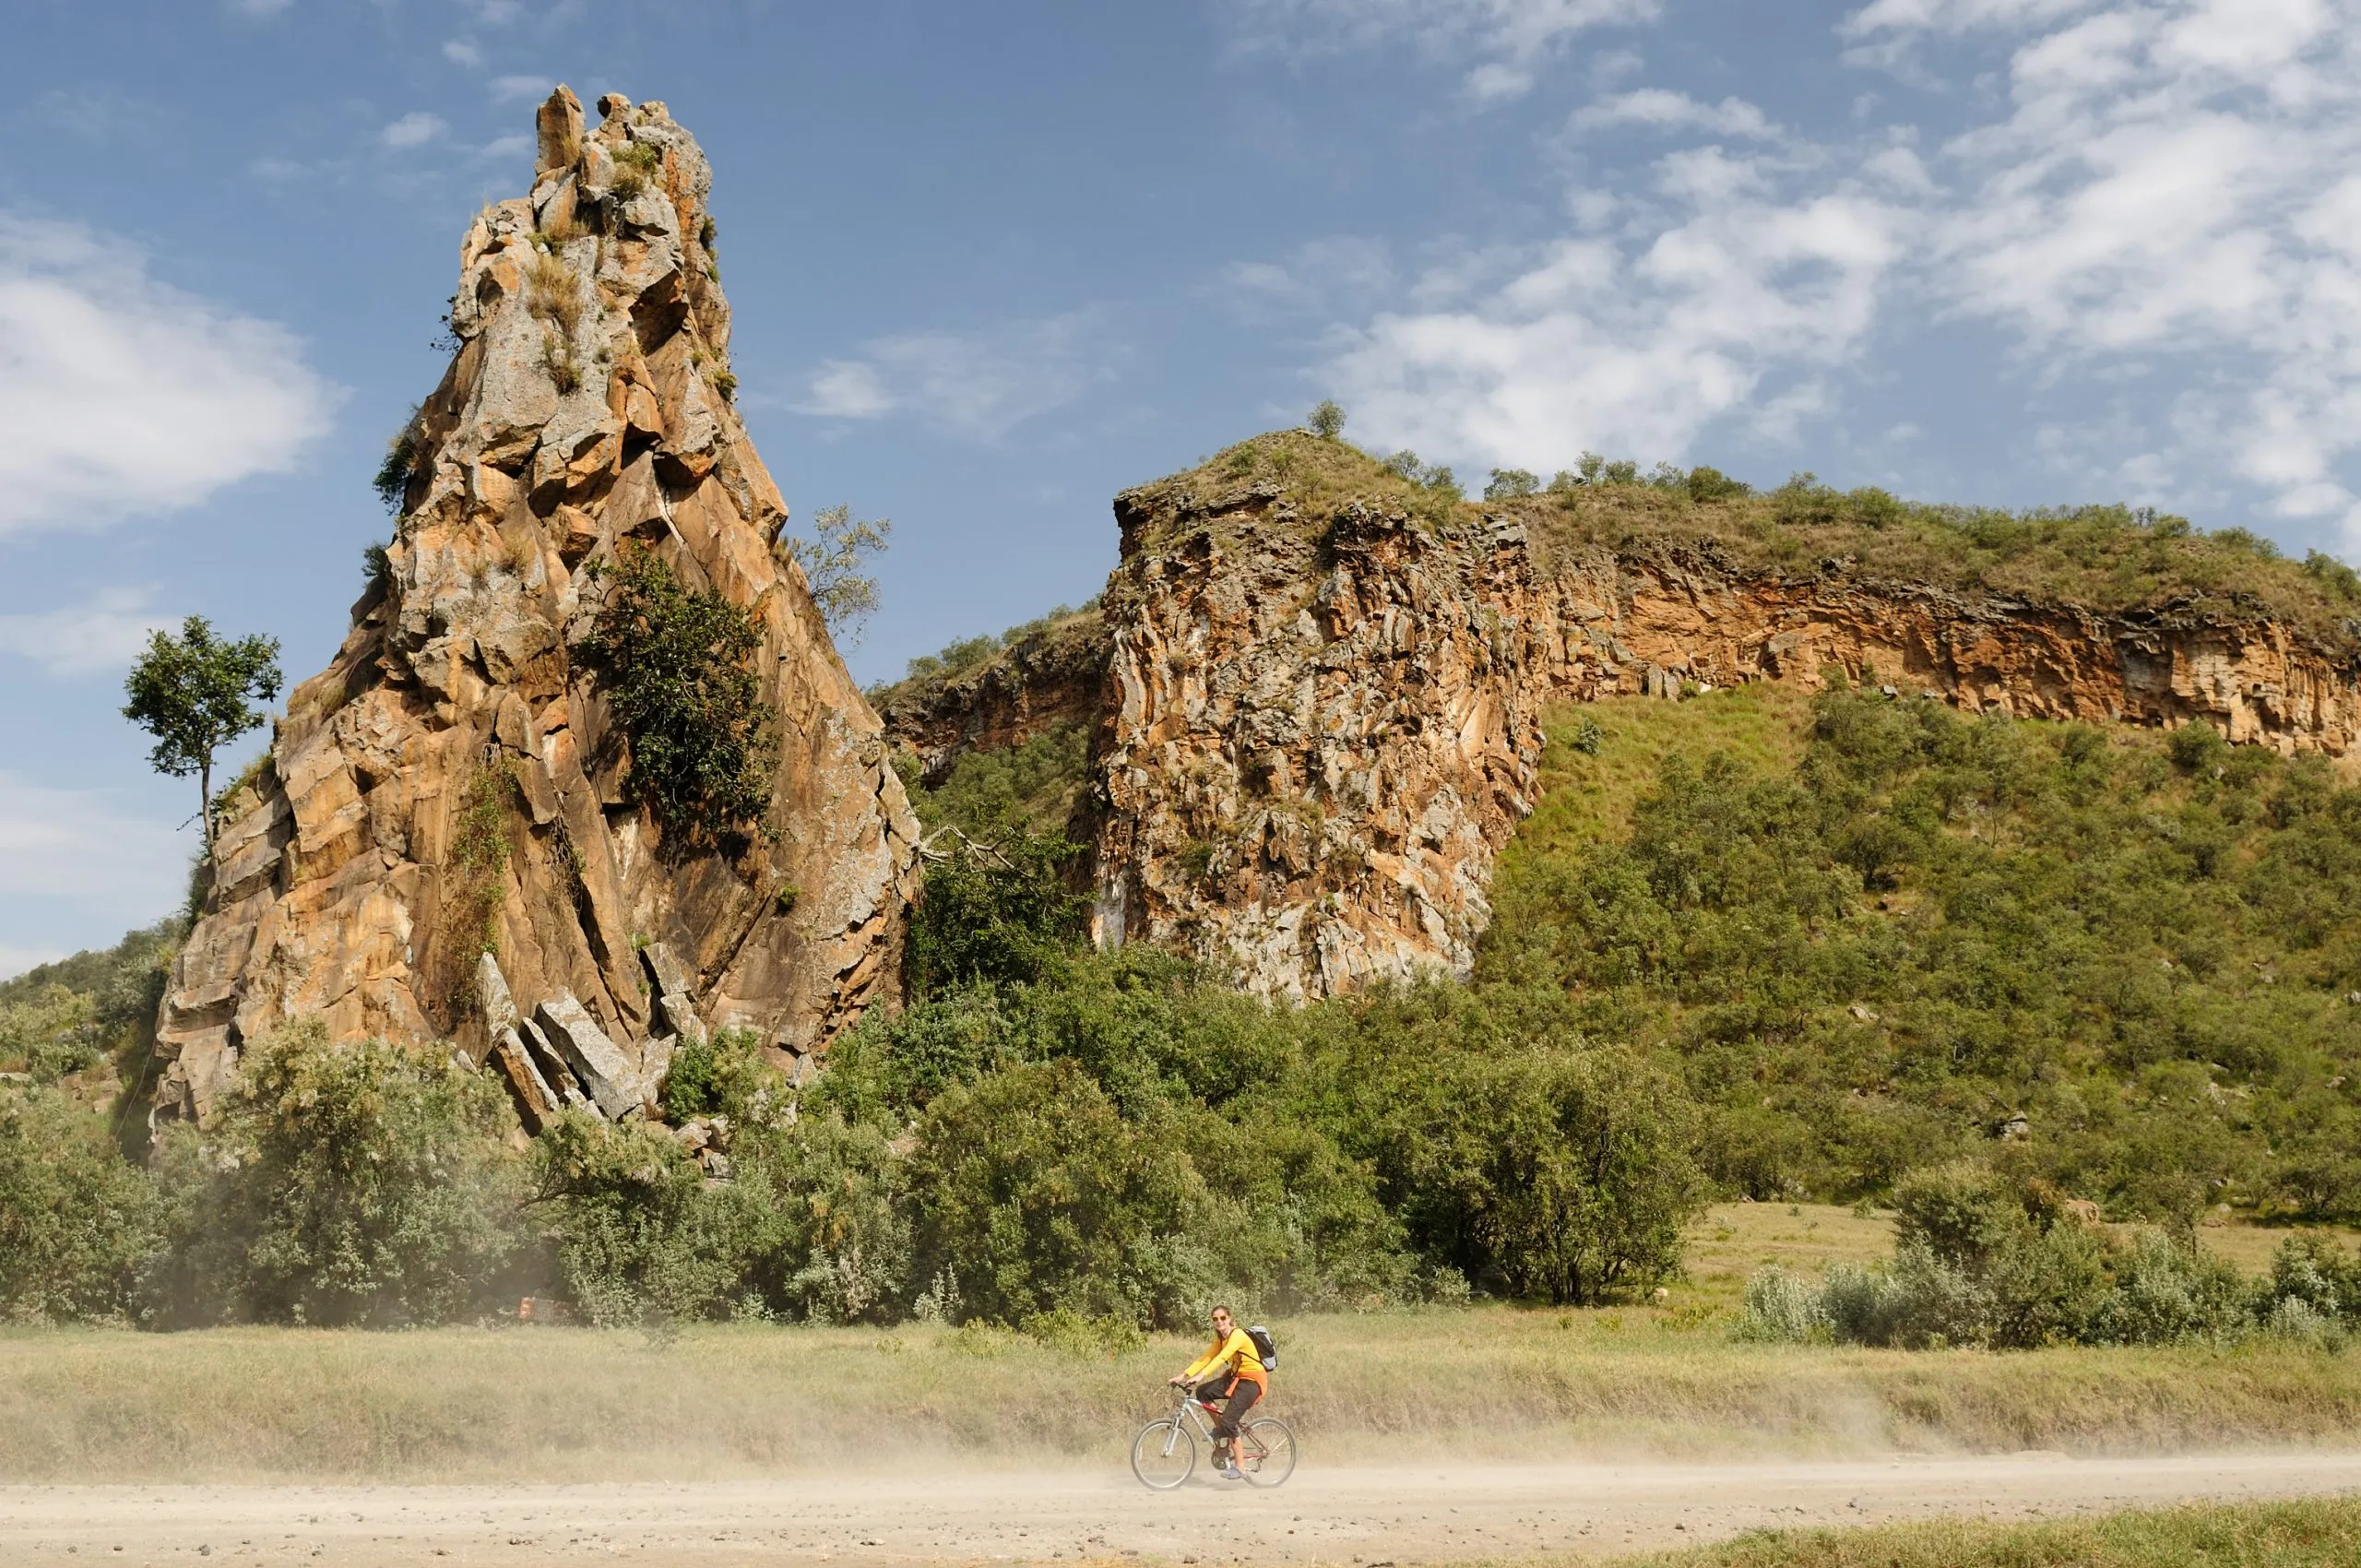 Le touriste fait du vélo au pied des tours rocheuses Stark dans le parc national de Hells Gate au Kenya.